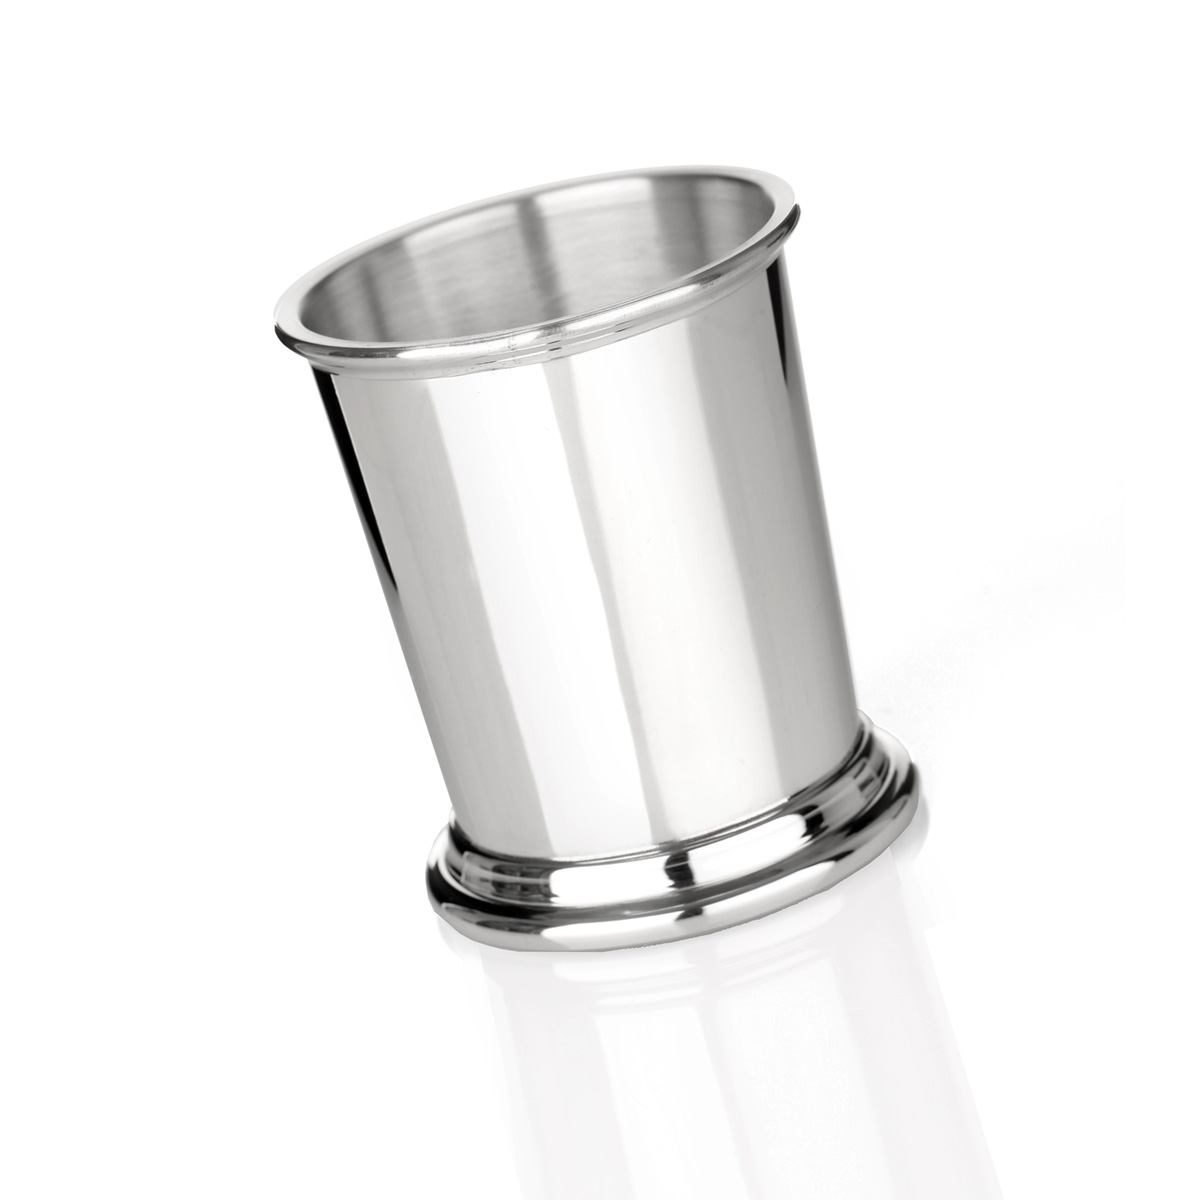 Mint Julep Cup - 1/2 Pint Becher aus poliertem Zinn - Made in England